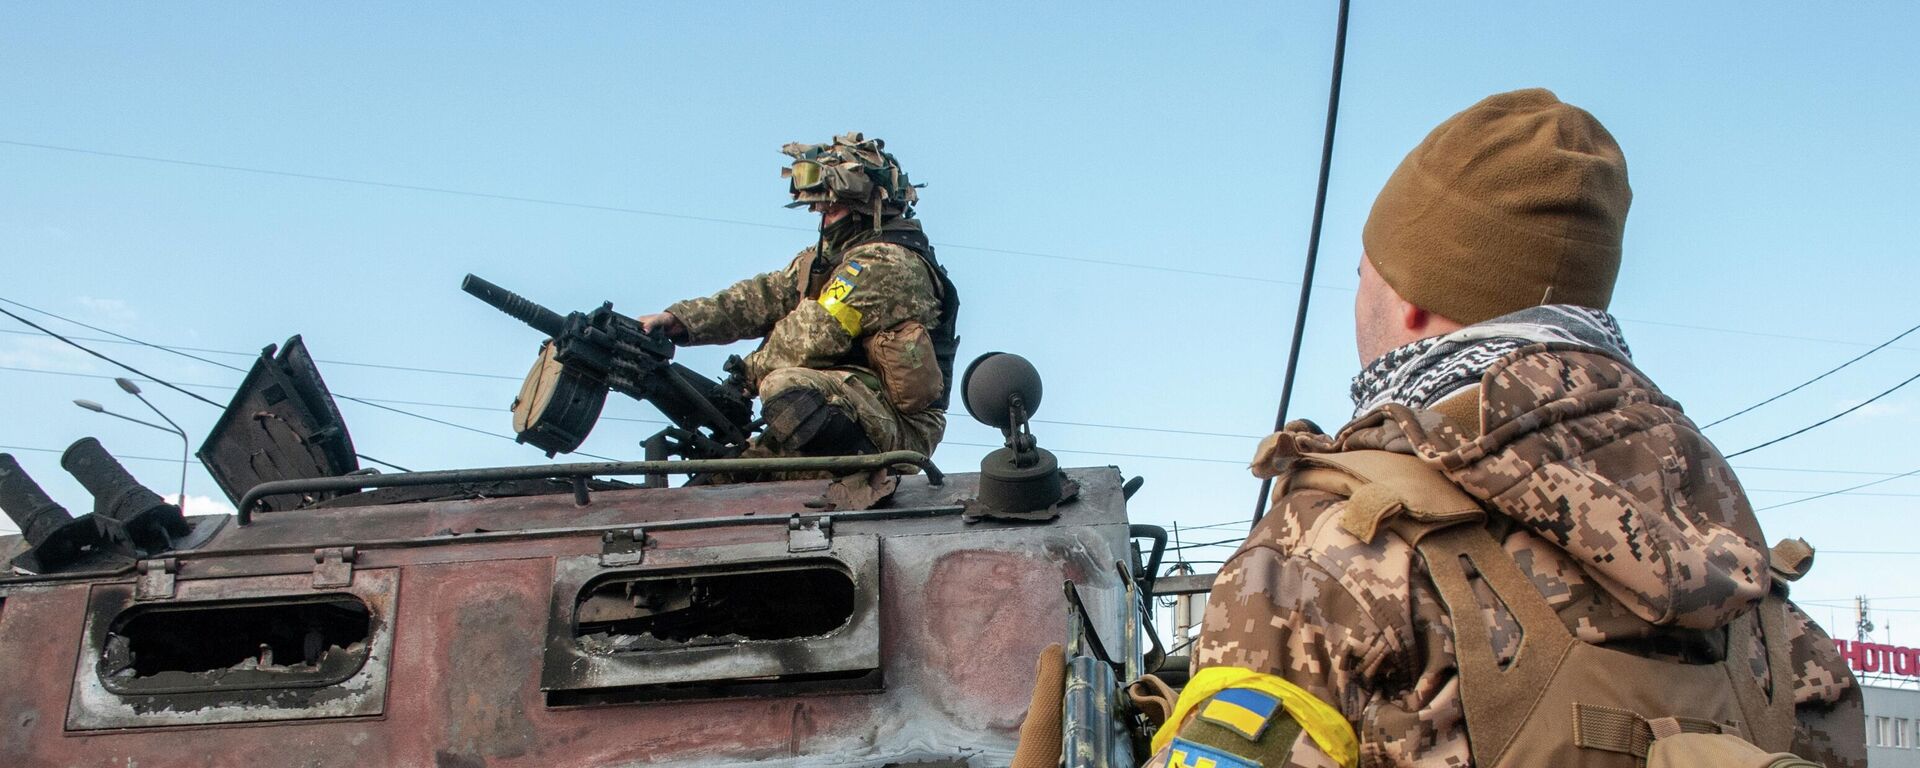 Soldados ucranianos inspecionam um veículo militar danificado após combate em Carcóvia, 27 de fevereiro, 2022 - Sputnik Brasil, 1920, 14.09.2022